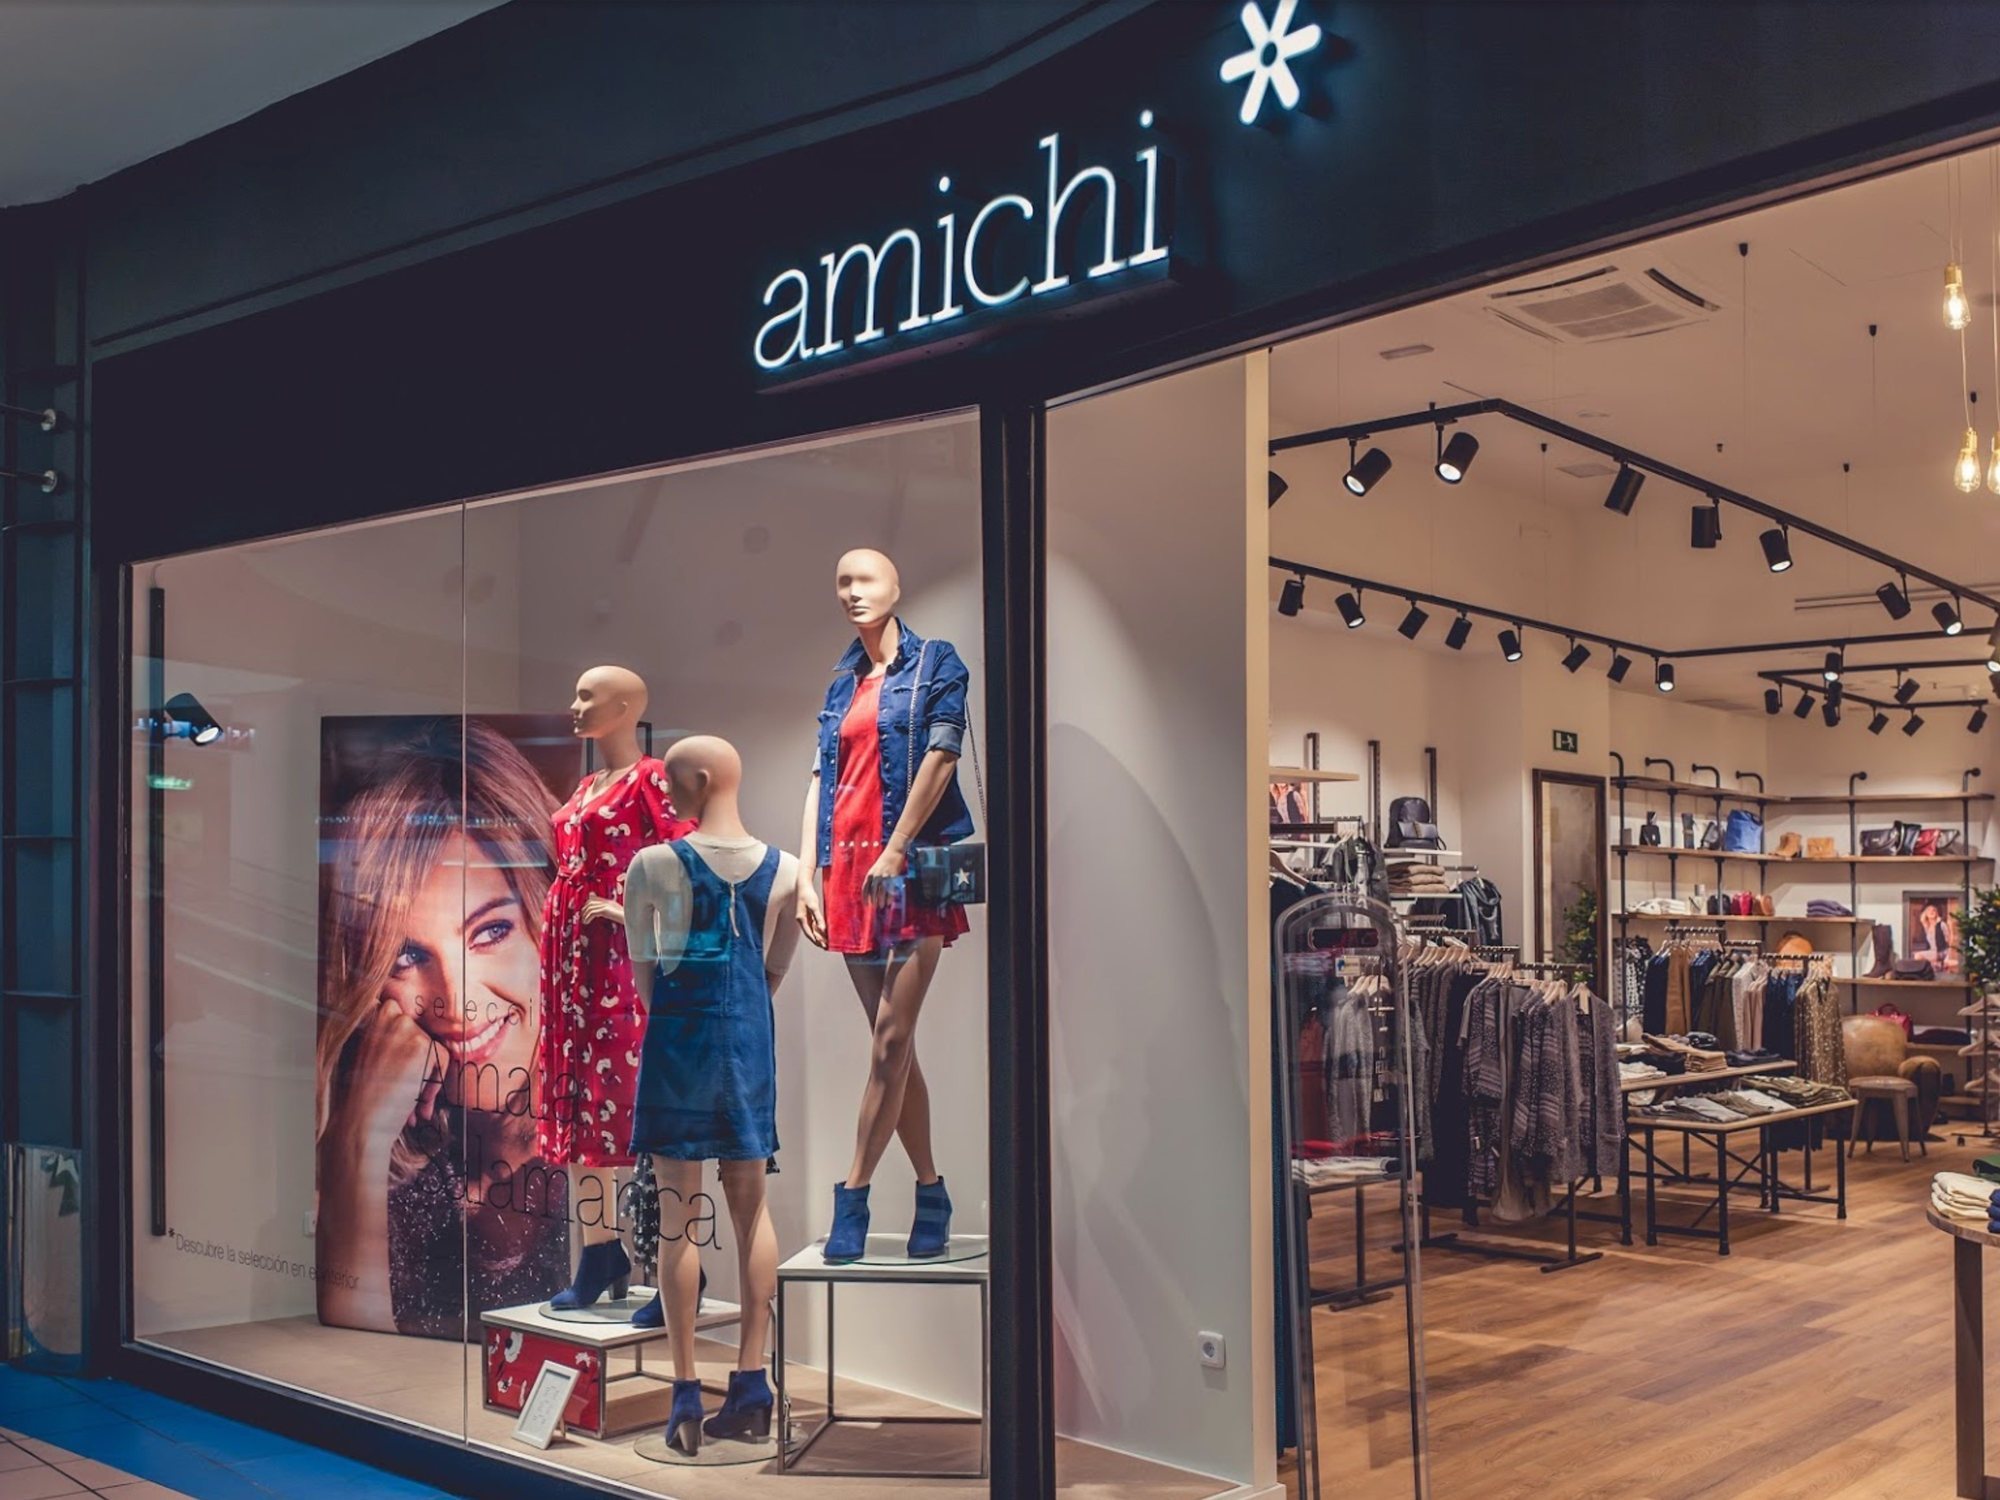 La marca de española Amichi, al borde del cierre tiendas y un nuevo ERE - Los Replicantes